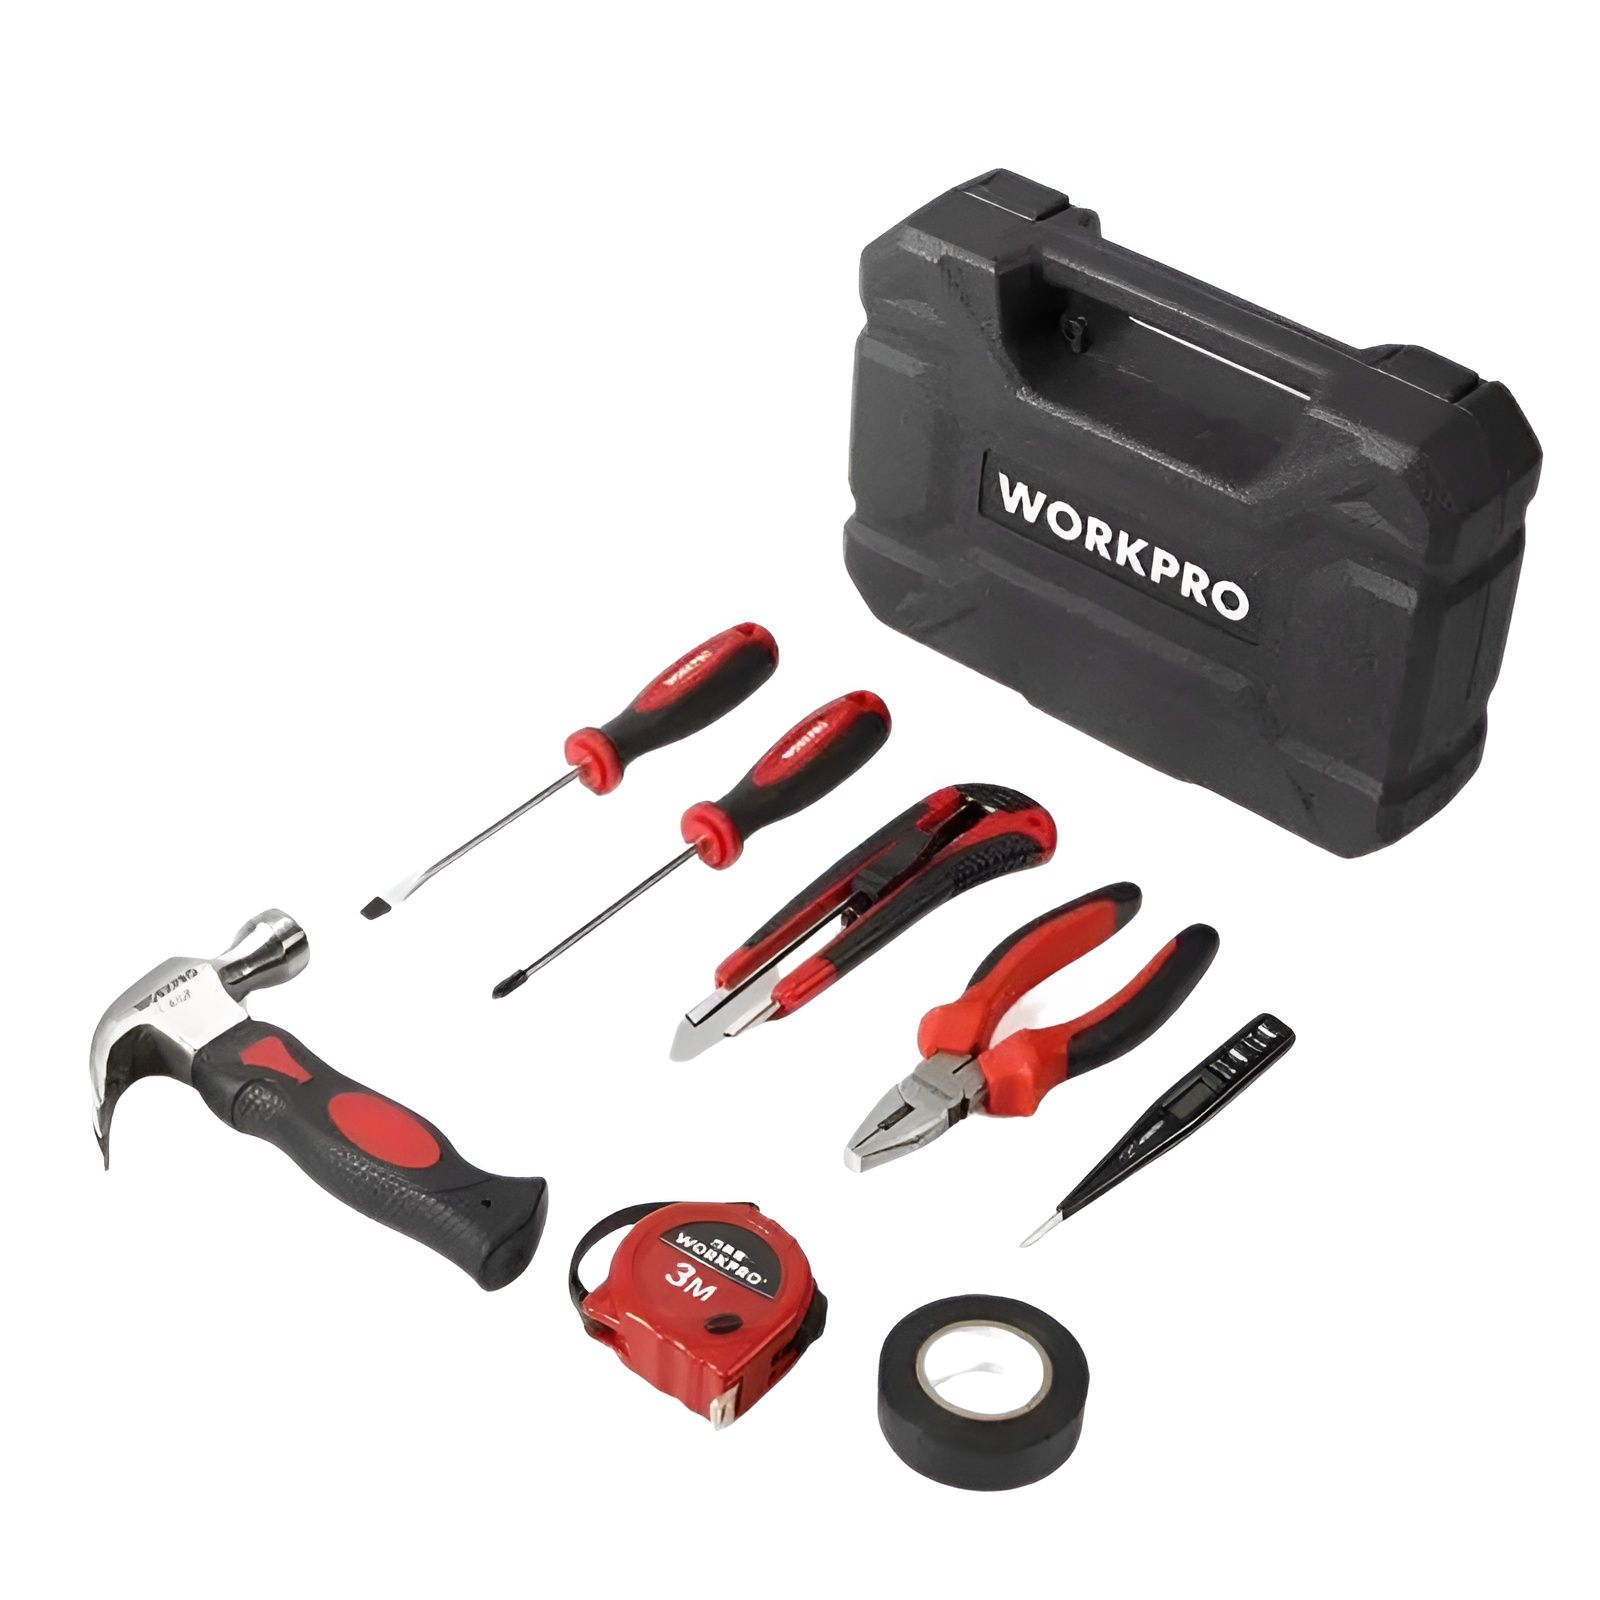  Bộ công cụ sửa chữa nhà các loại (1 set = 8 cái) Workpro - 209001 